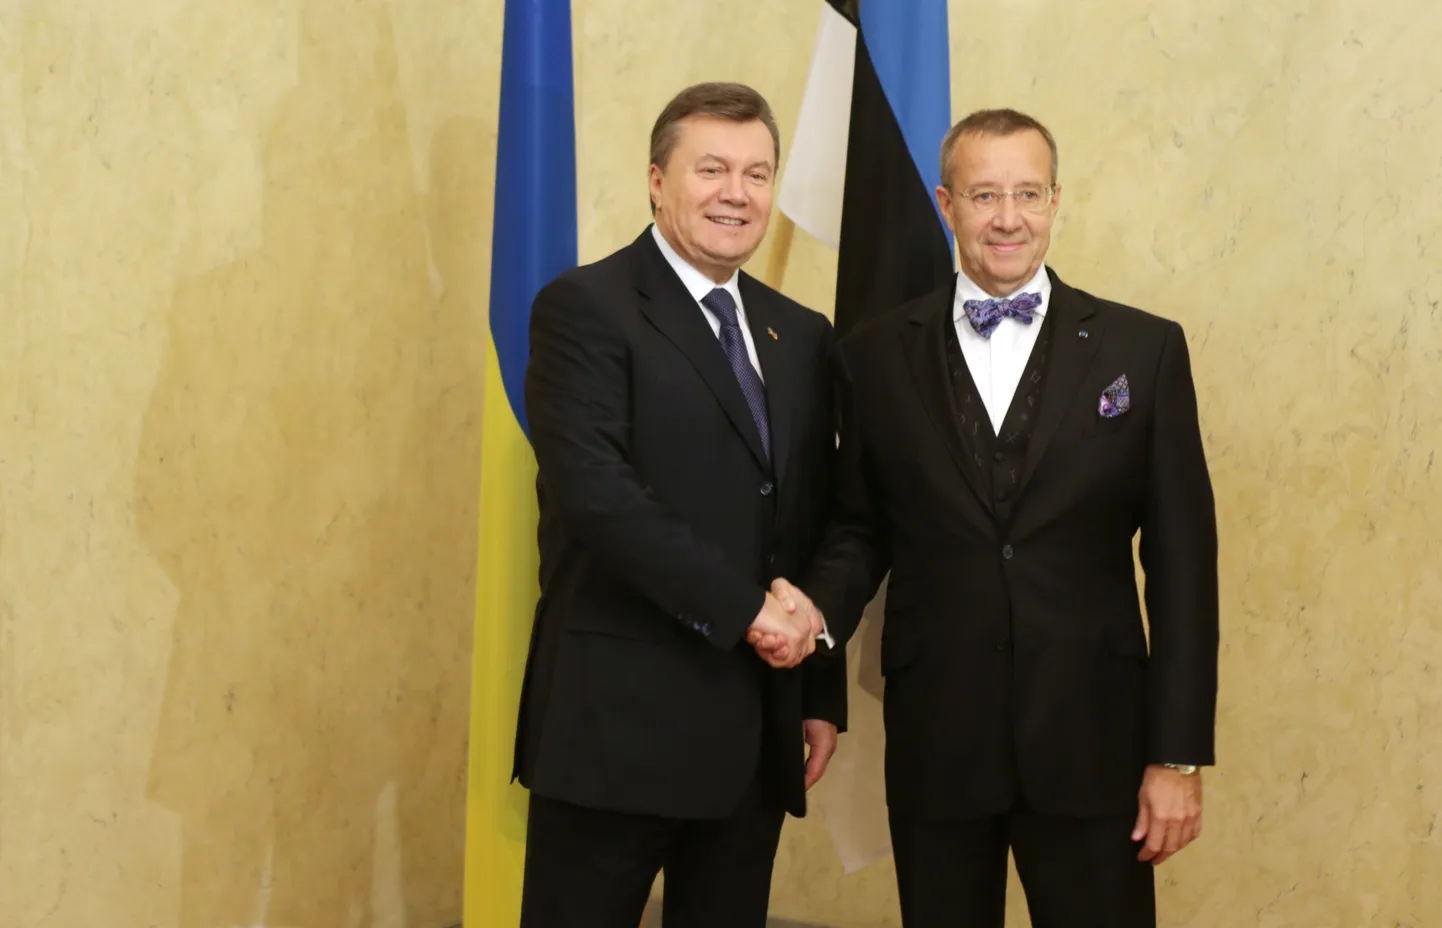 Ukraina president Viktor Janukovõtš ja Eesti riigipea Toomas Hendrik Ilves oktoobris Tallinnas.